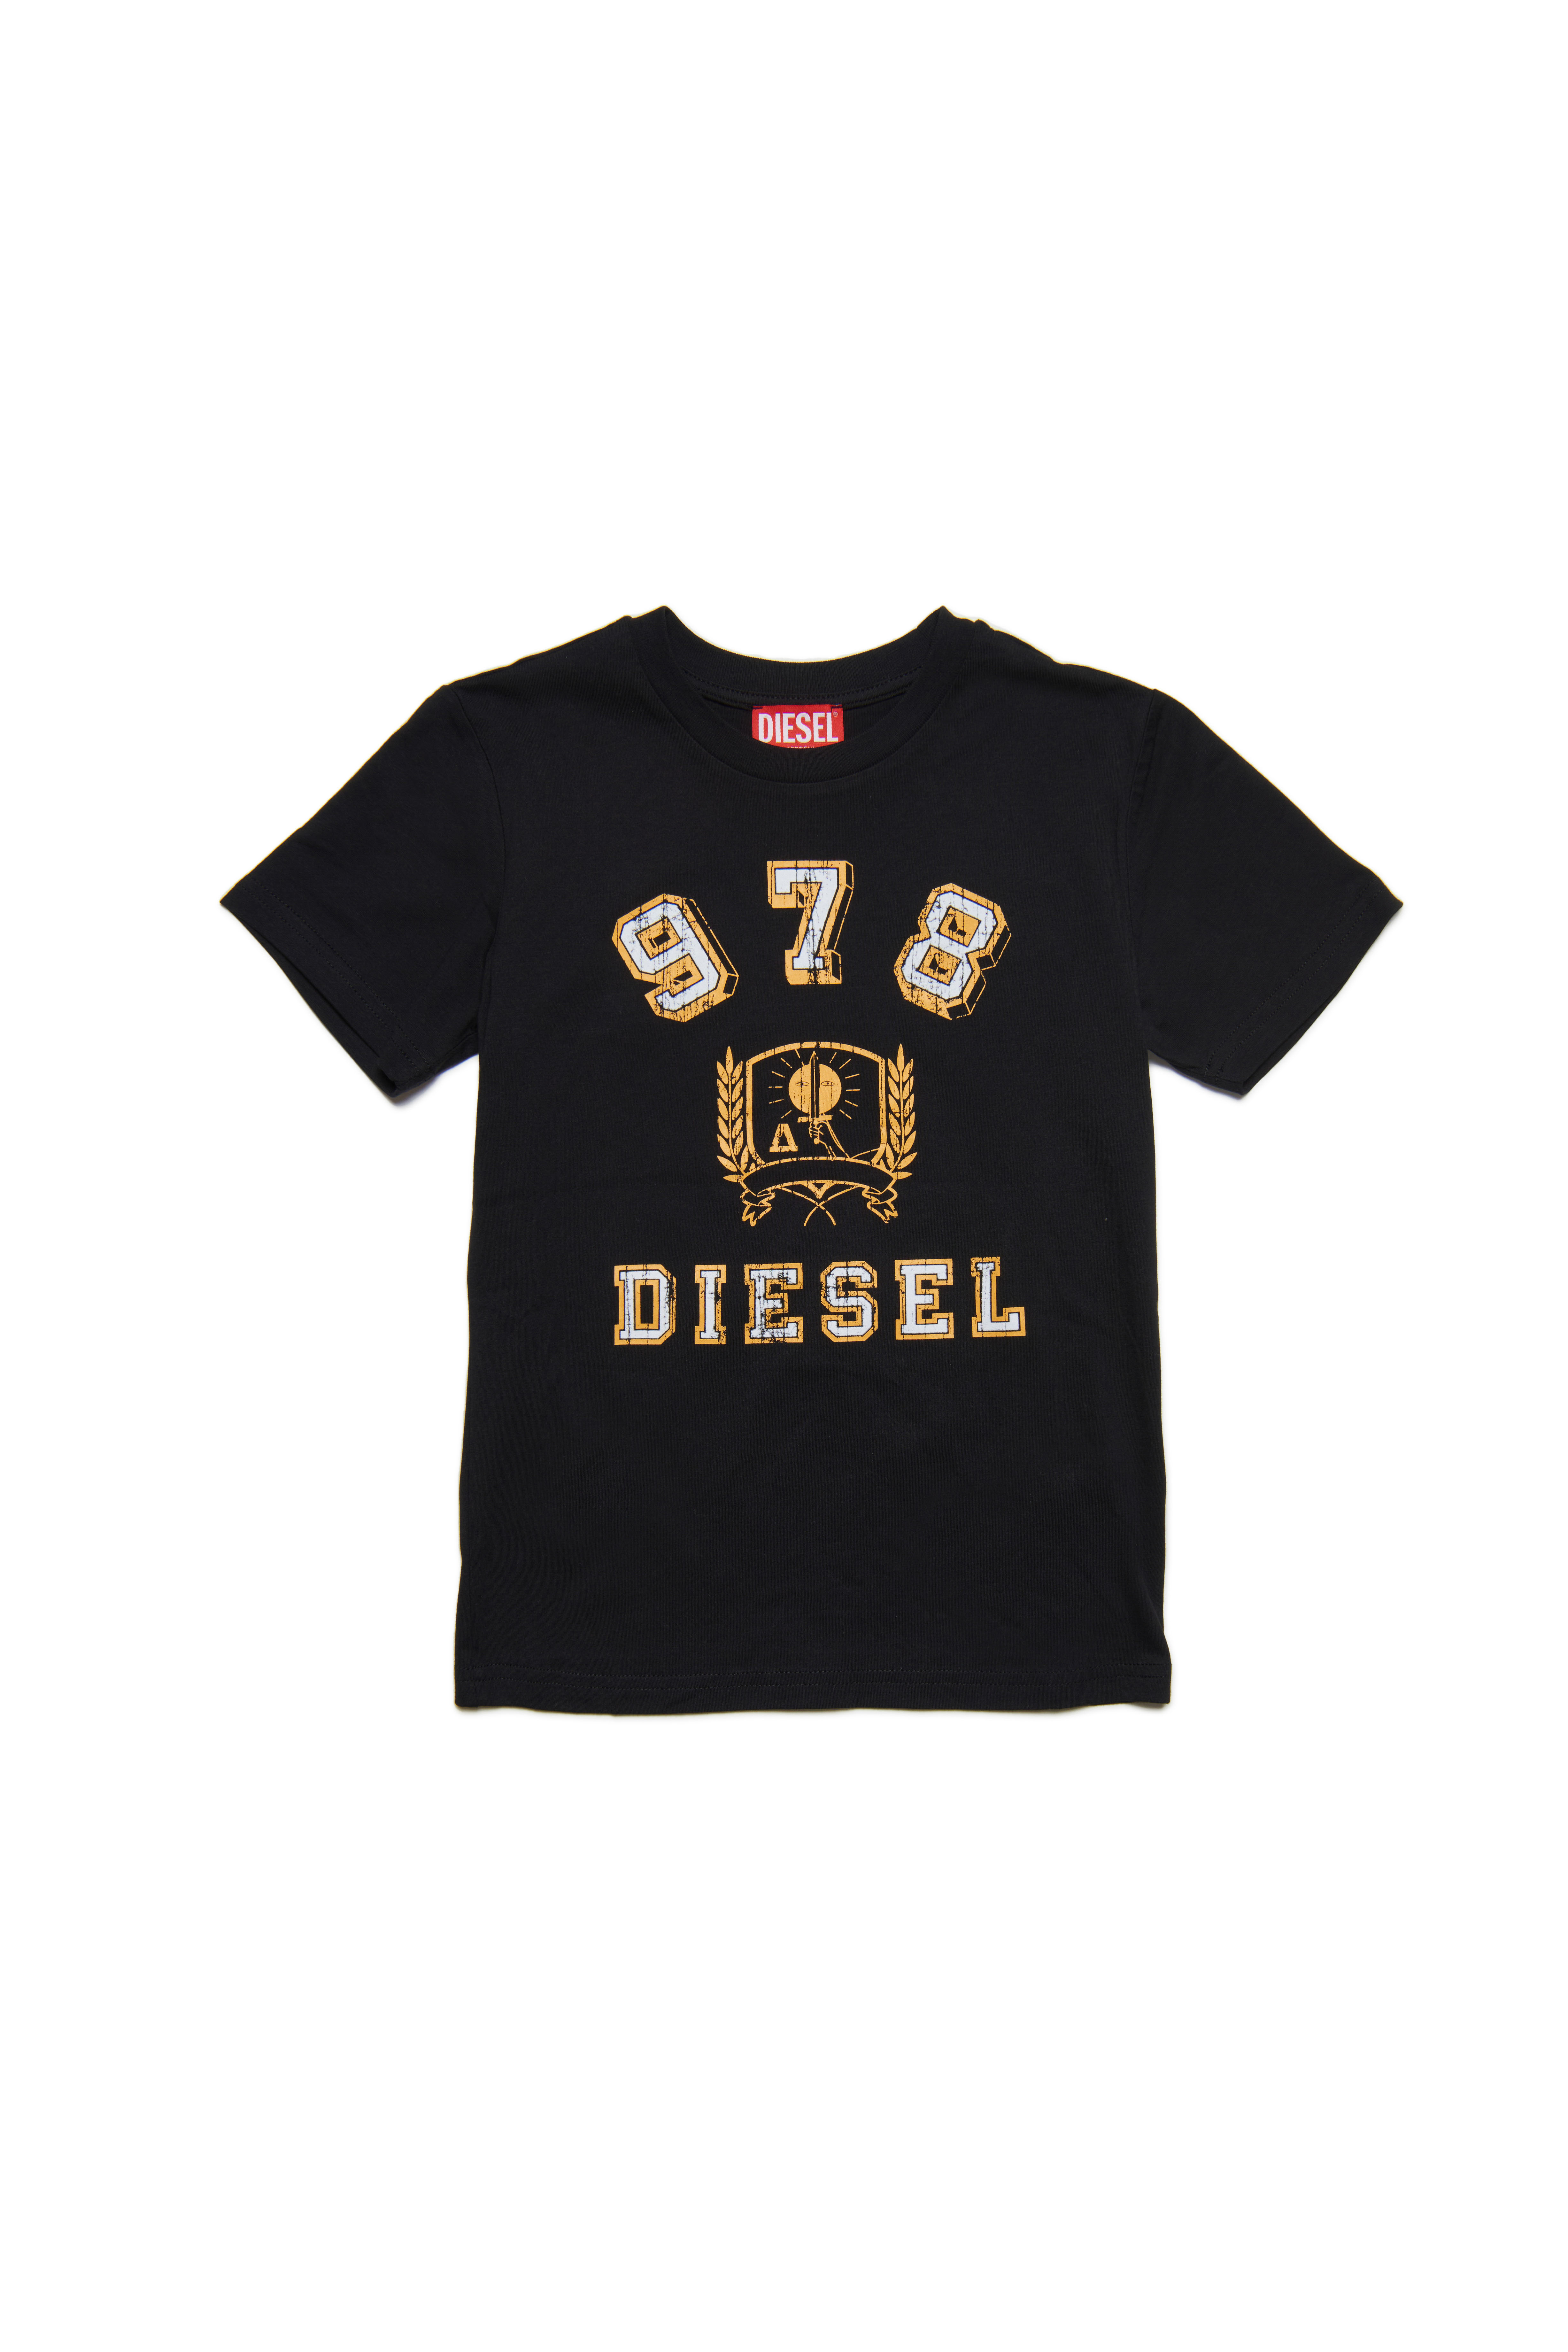 Diesel - TDIEGORE11, Black - Image 1